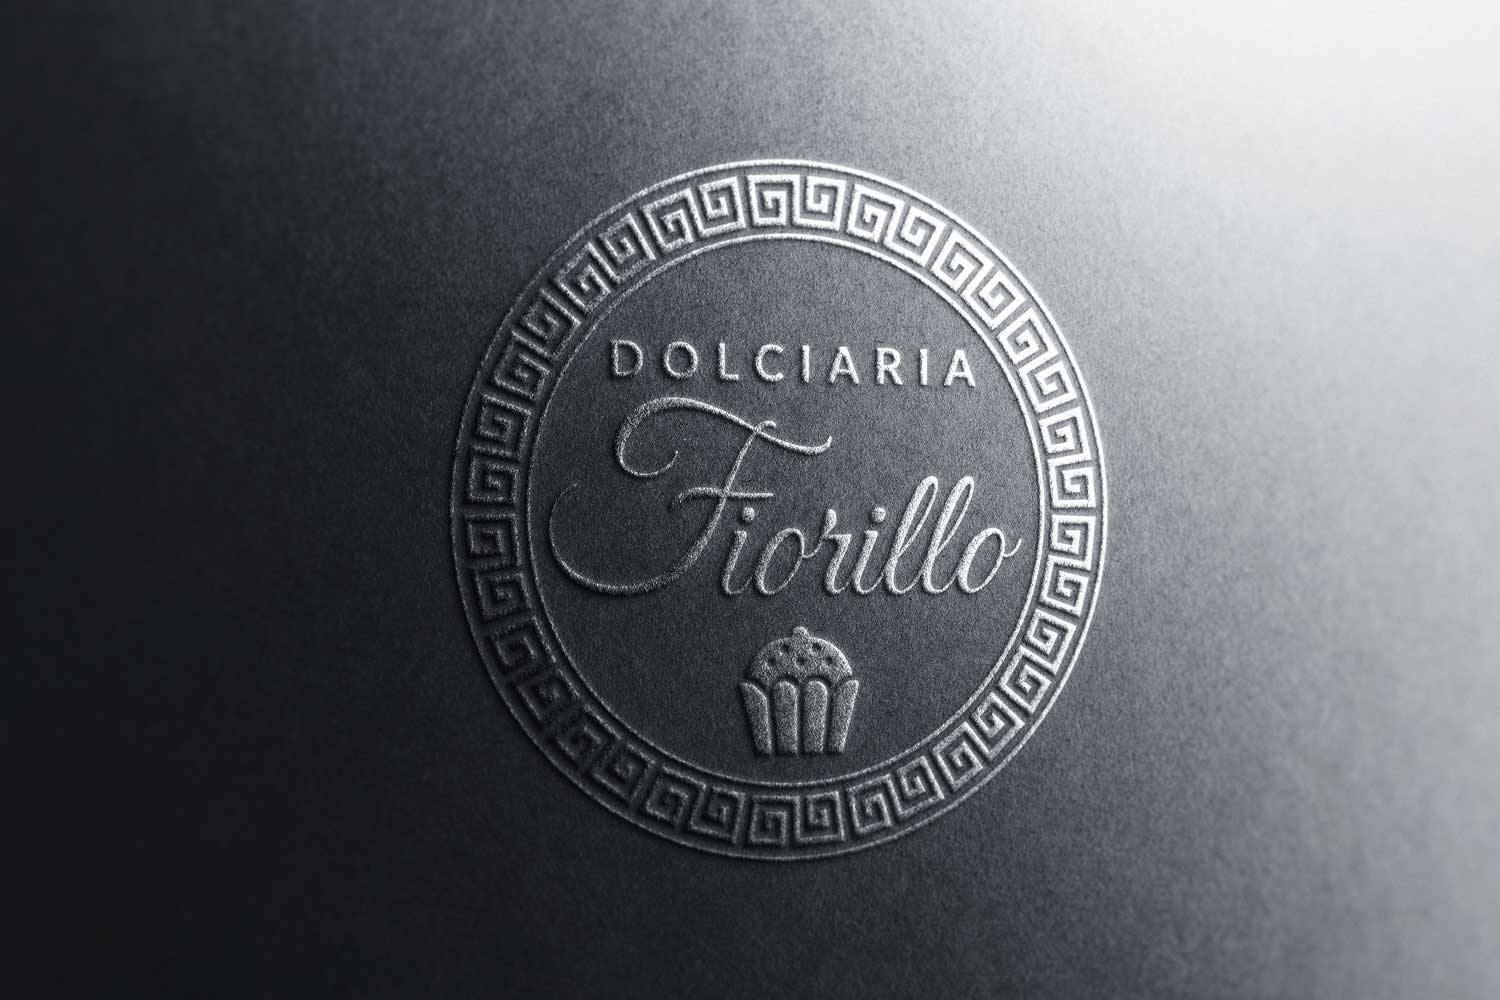 Dolciaria Fiorillo - Brand Identity